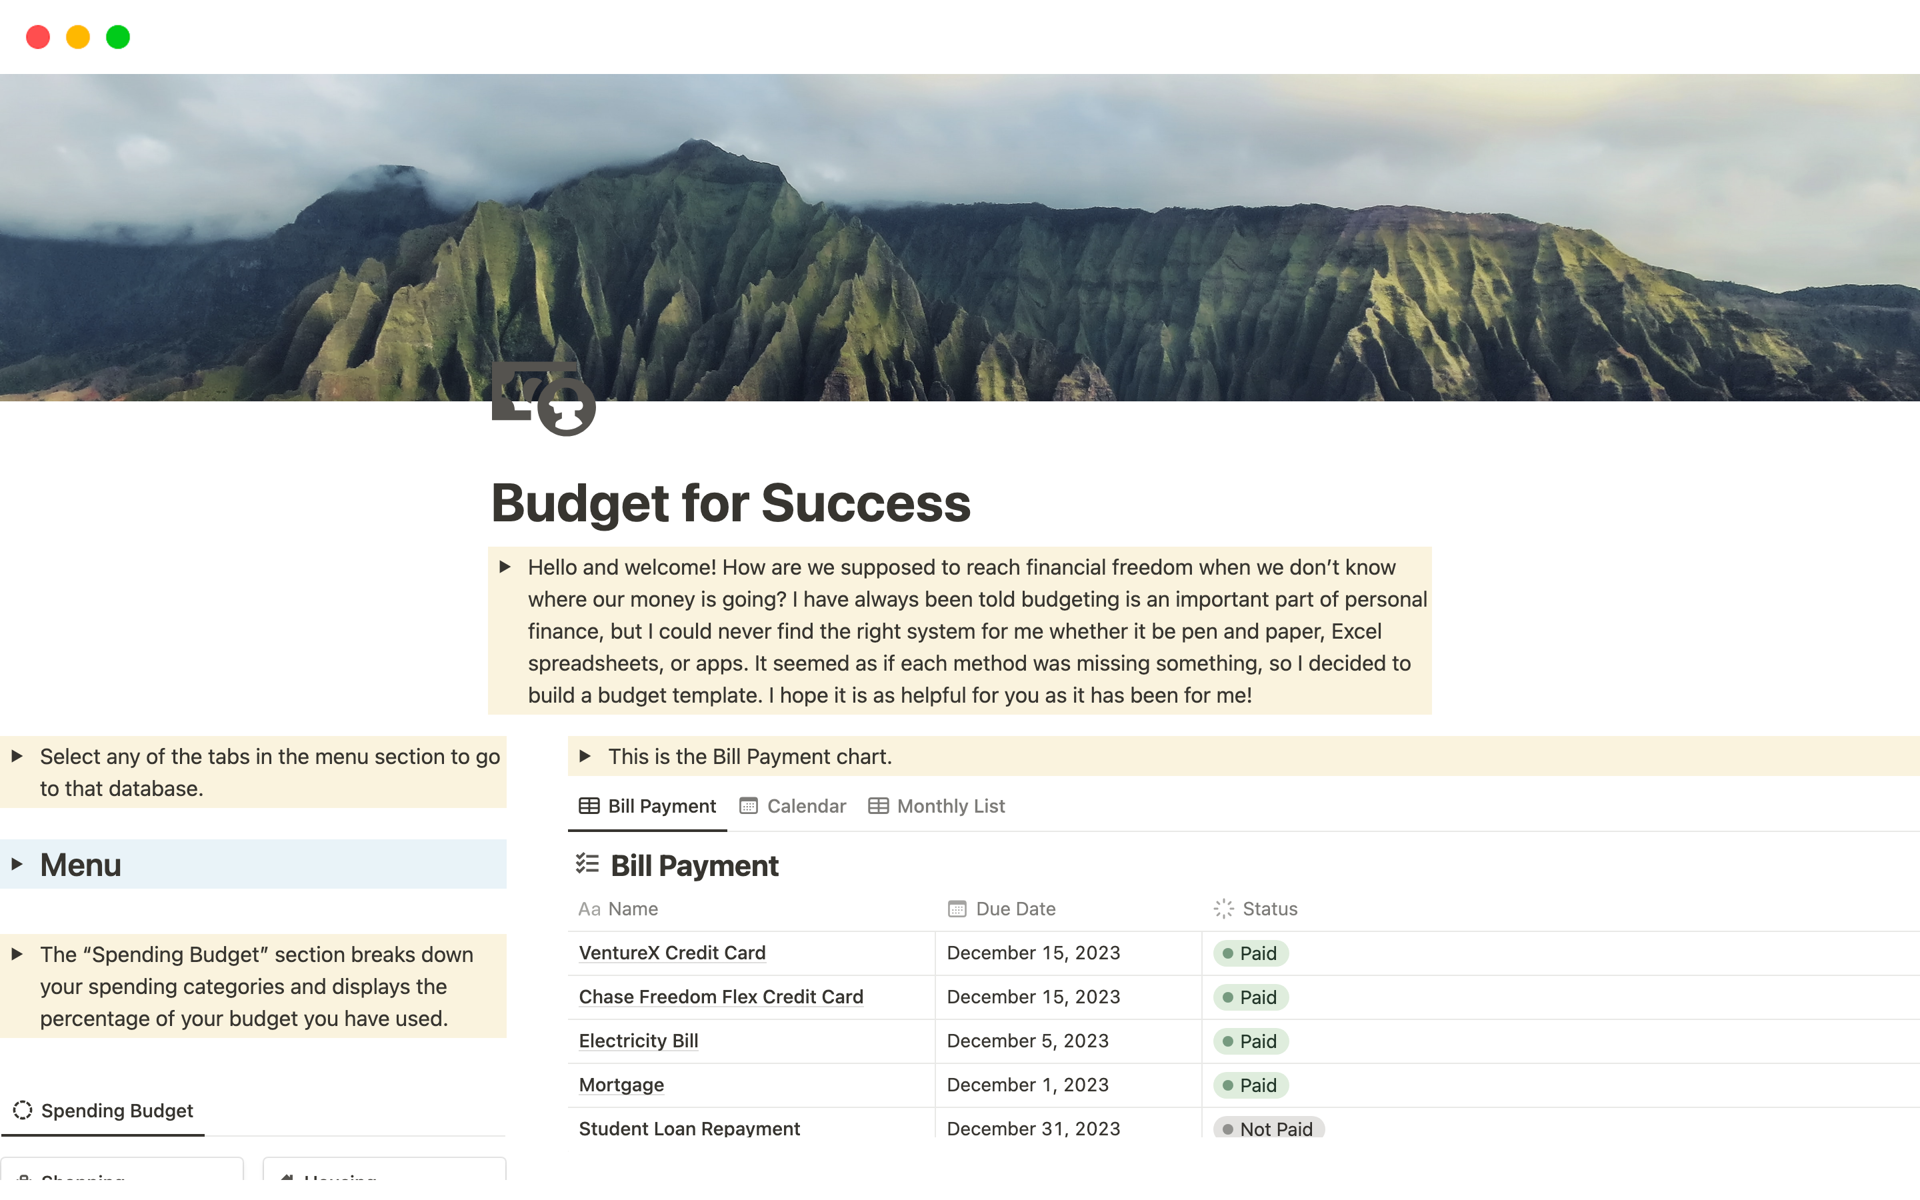 Vista previa de una plantilla para Budget for Success